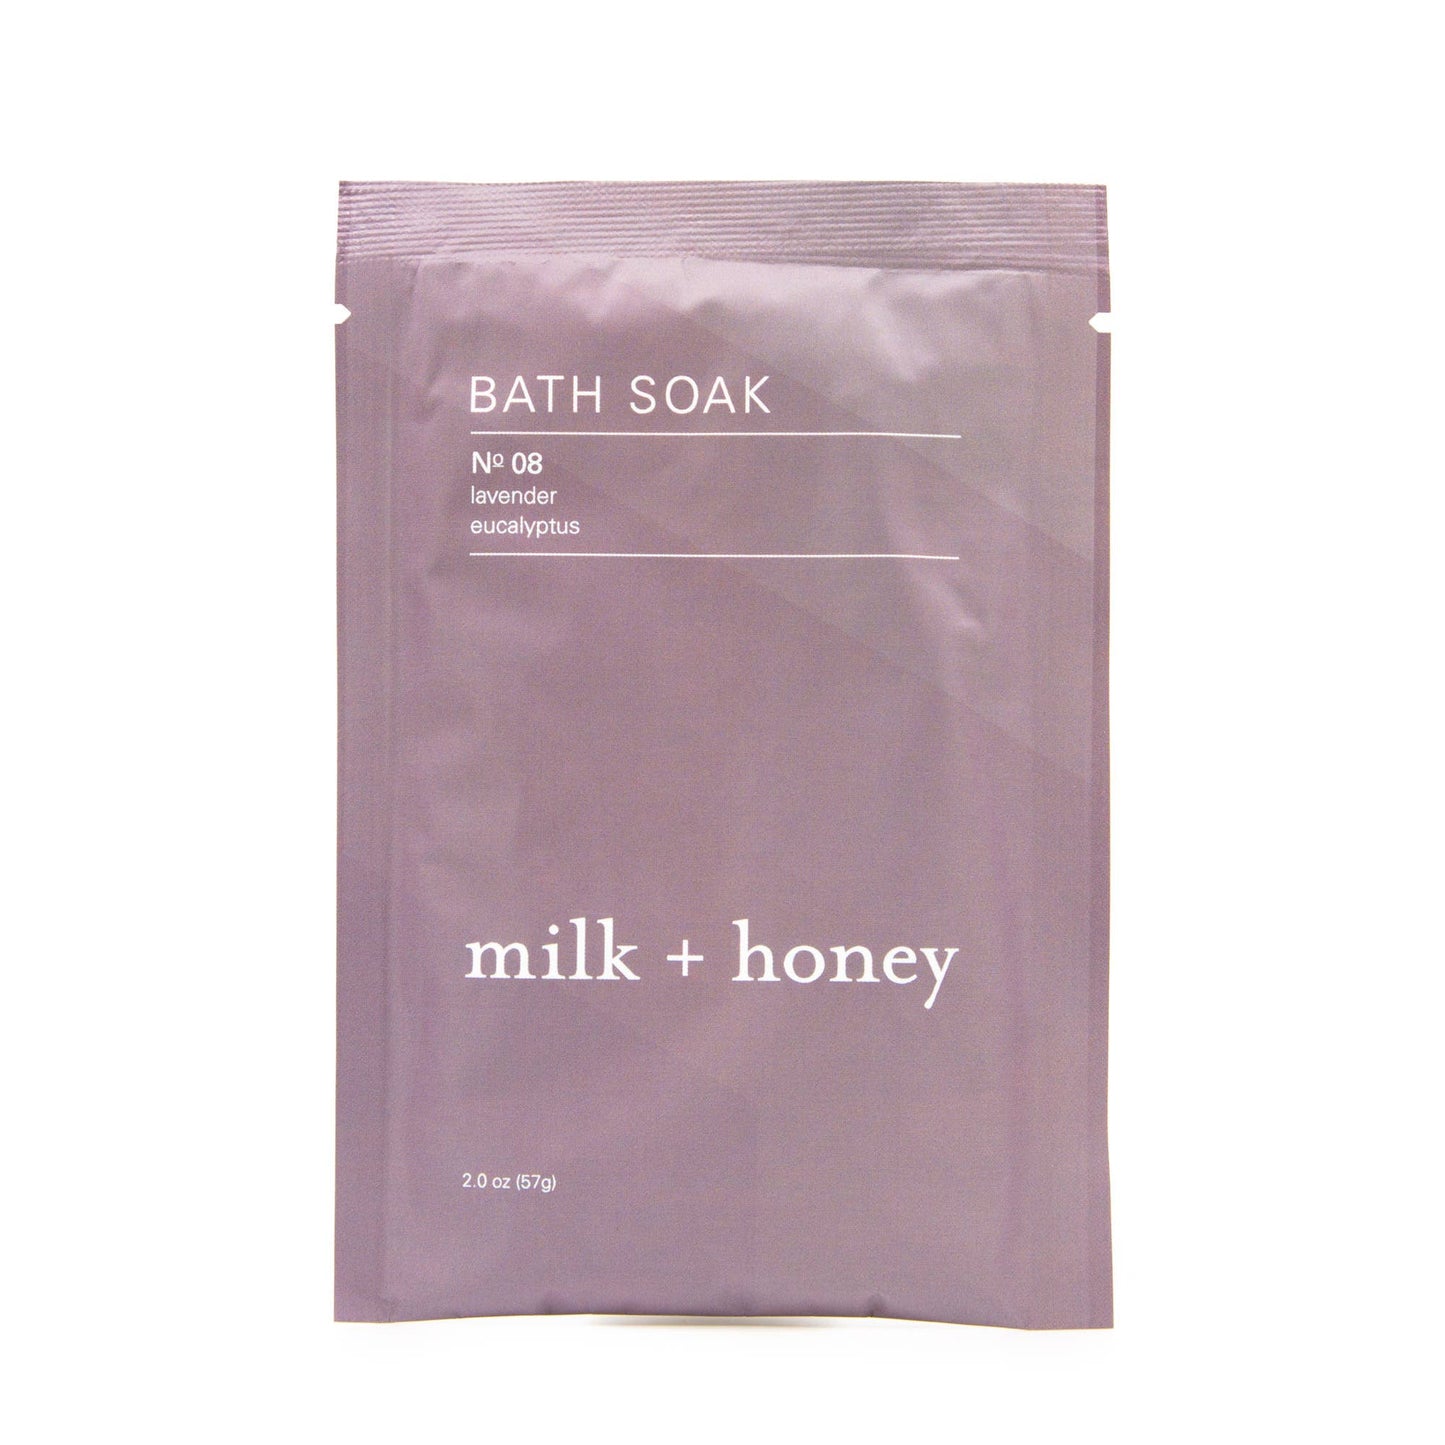 Bath Soak No. 08 - Single Packet